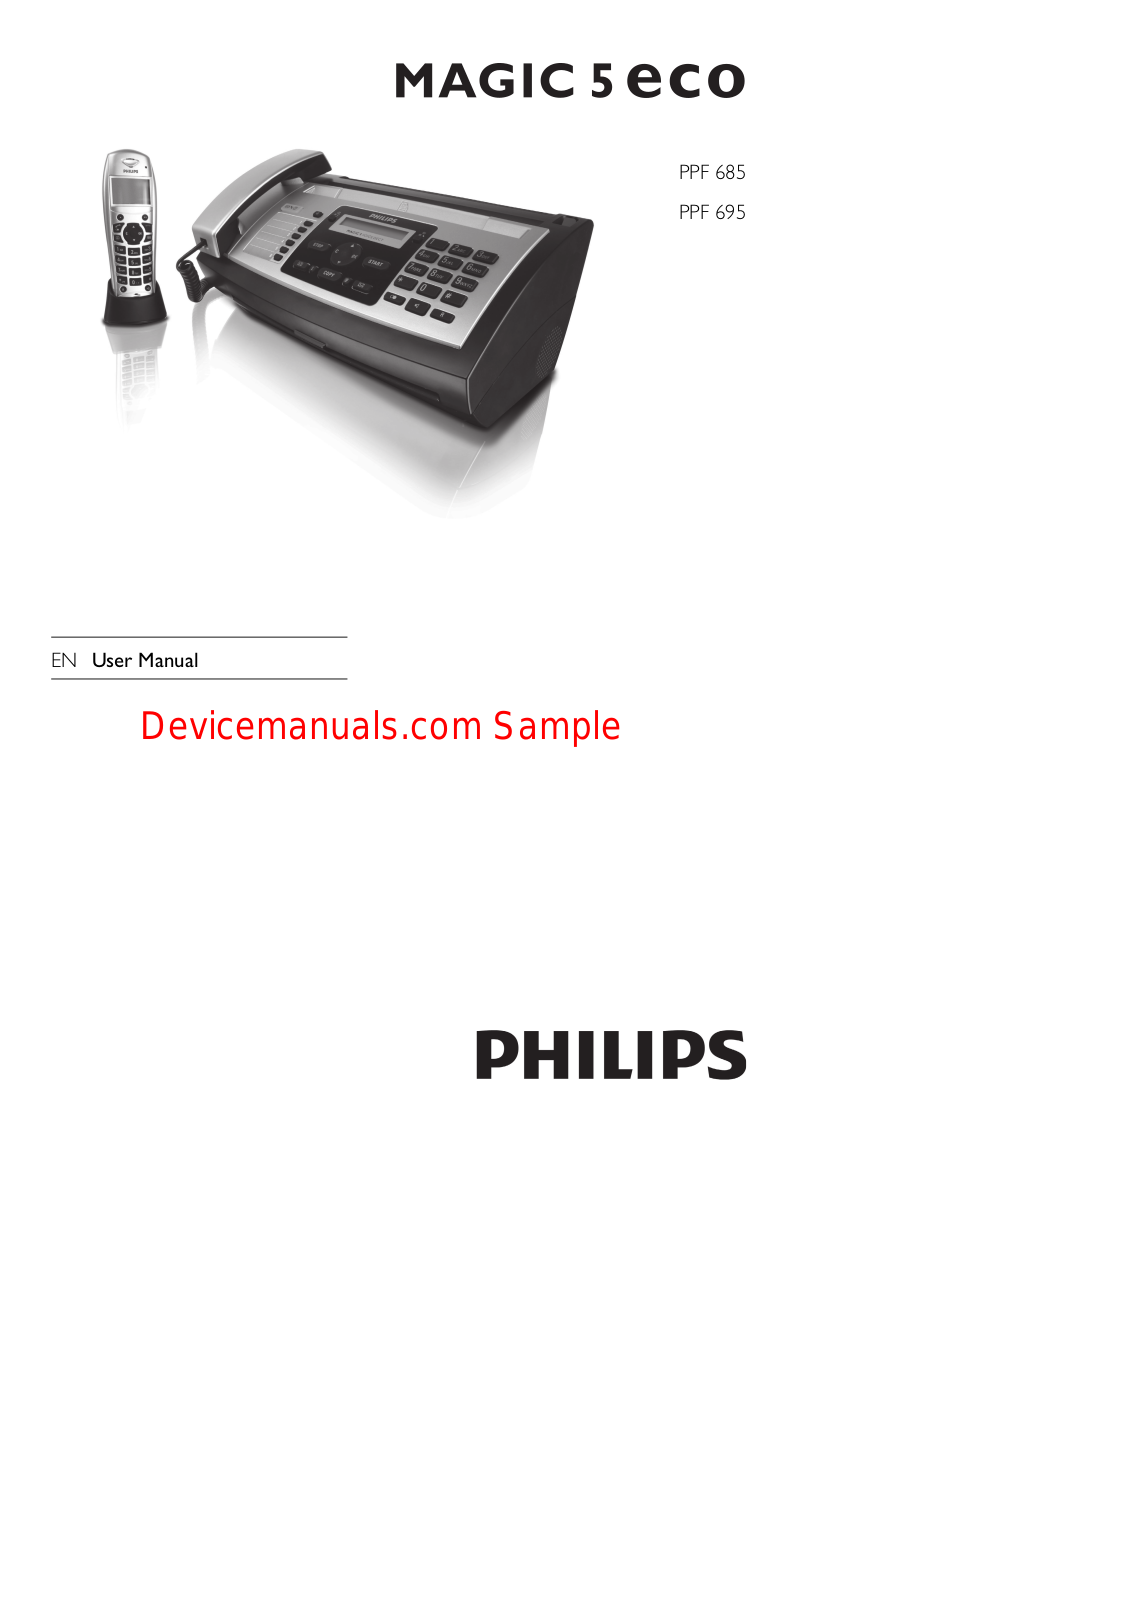 Philips PPF685E/PTB User Manual